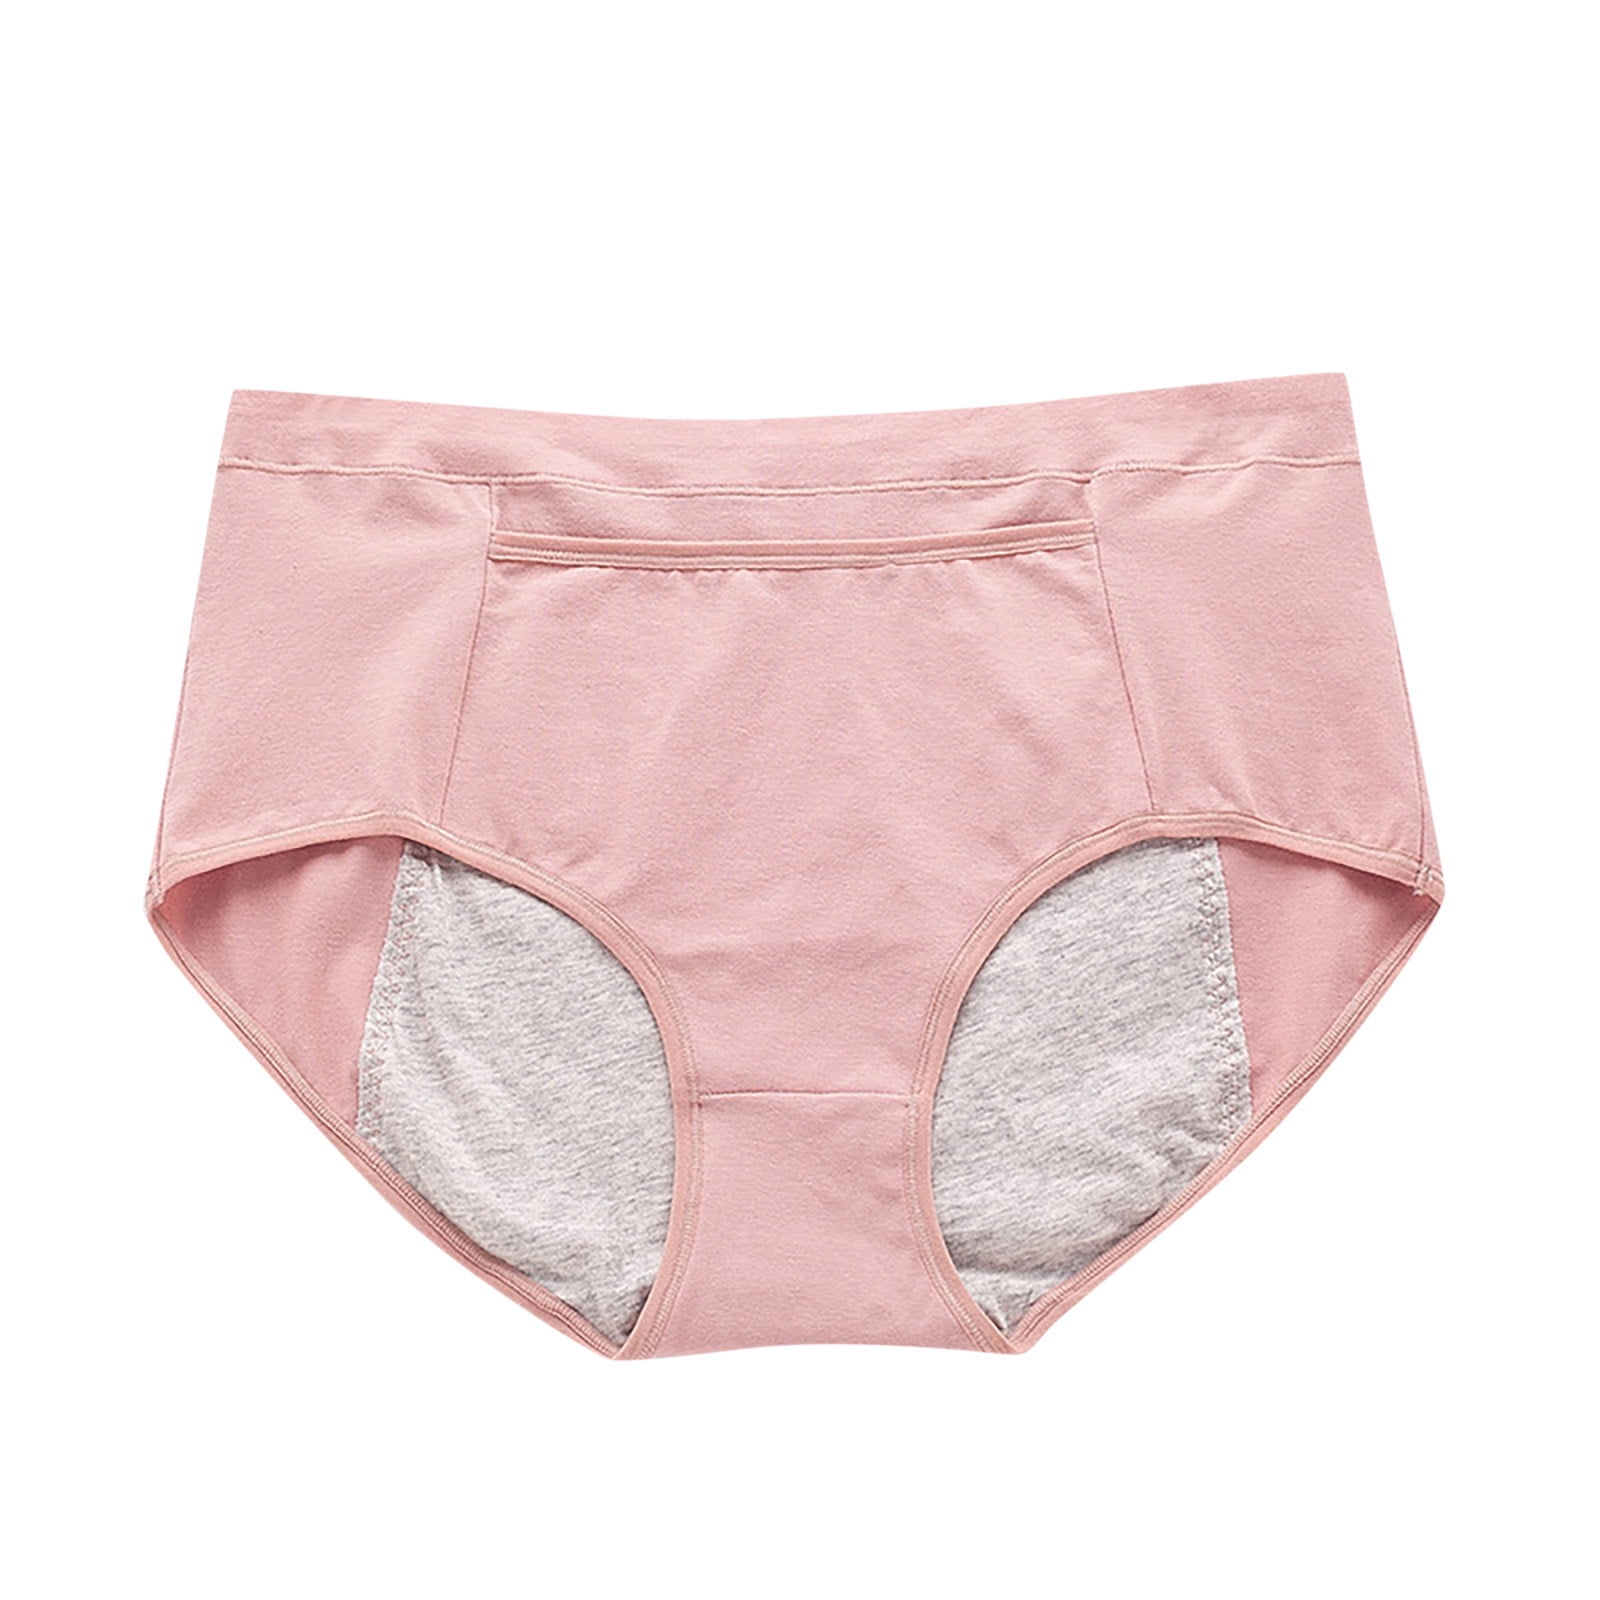 Xmarks Sport Period Underwear for Women, Moderate Absorbency